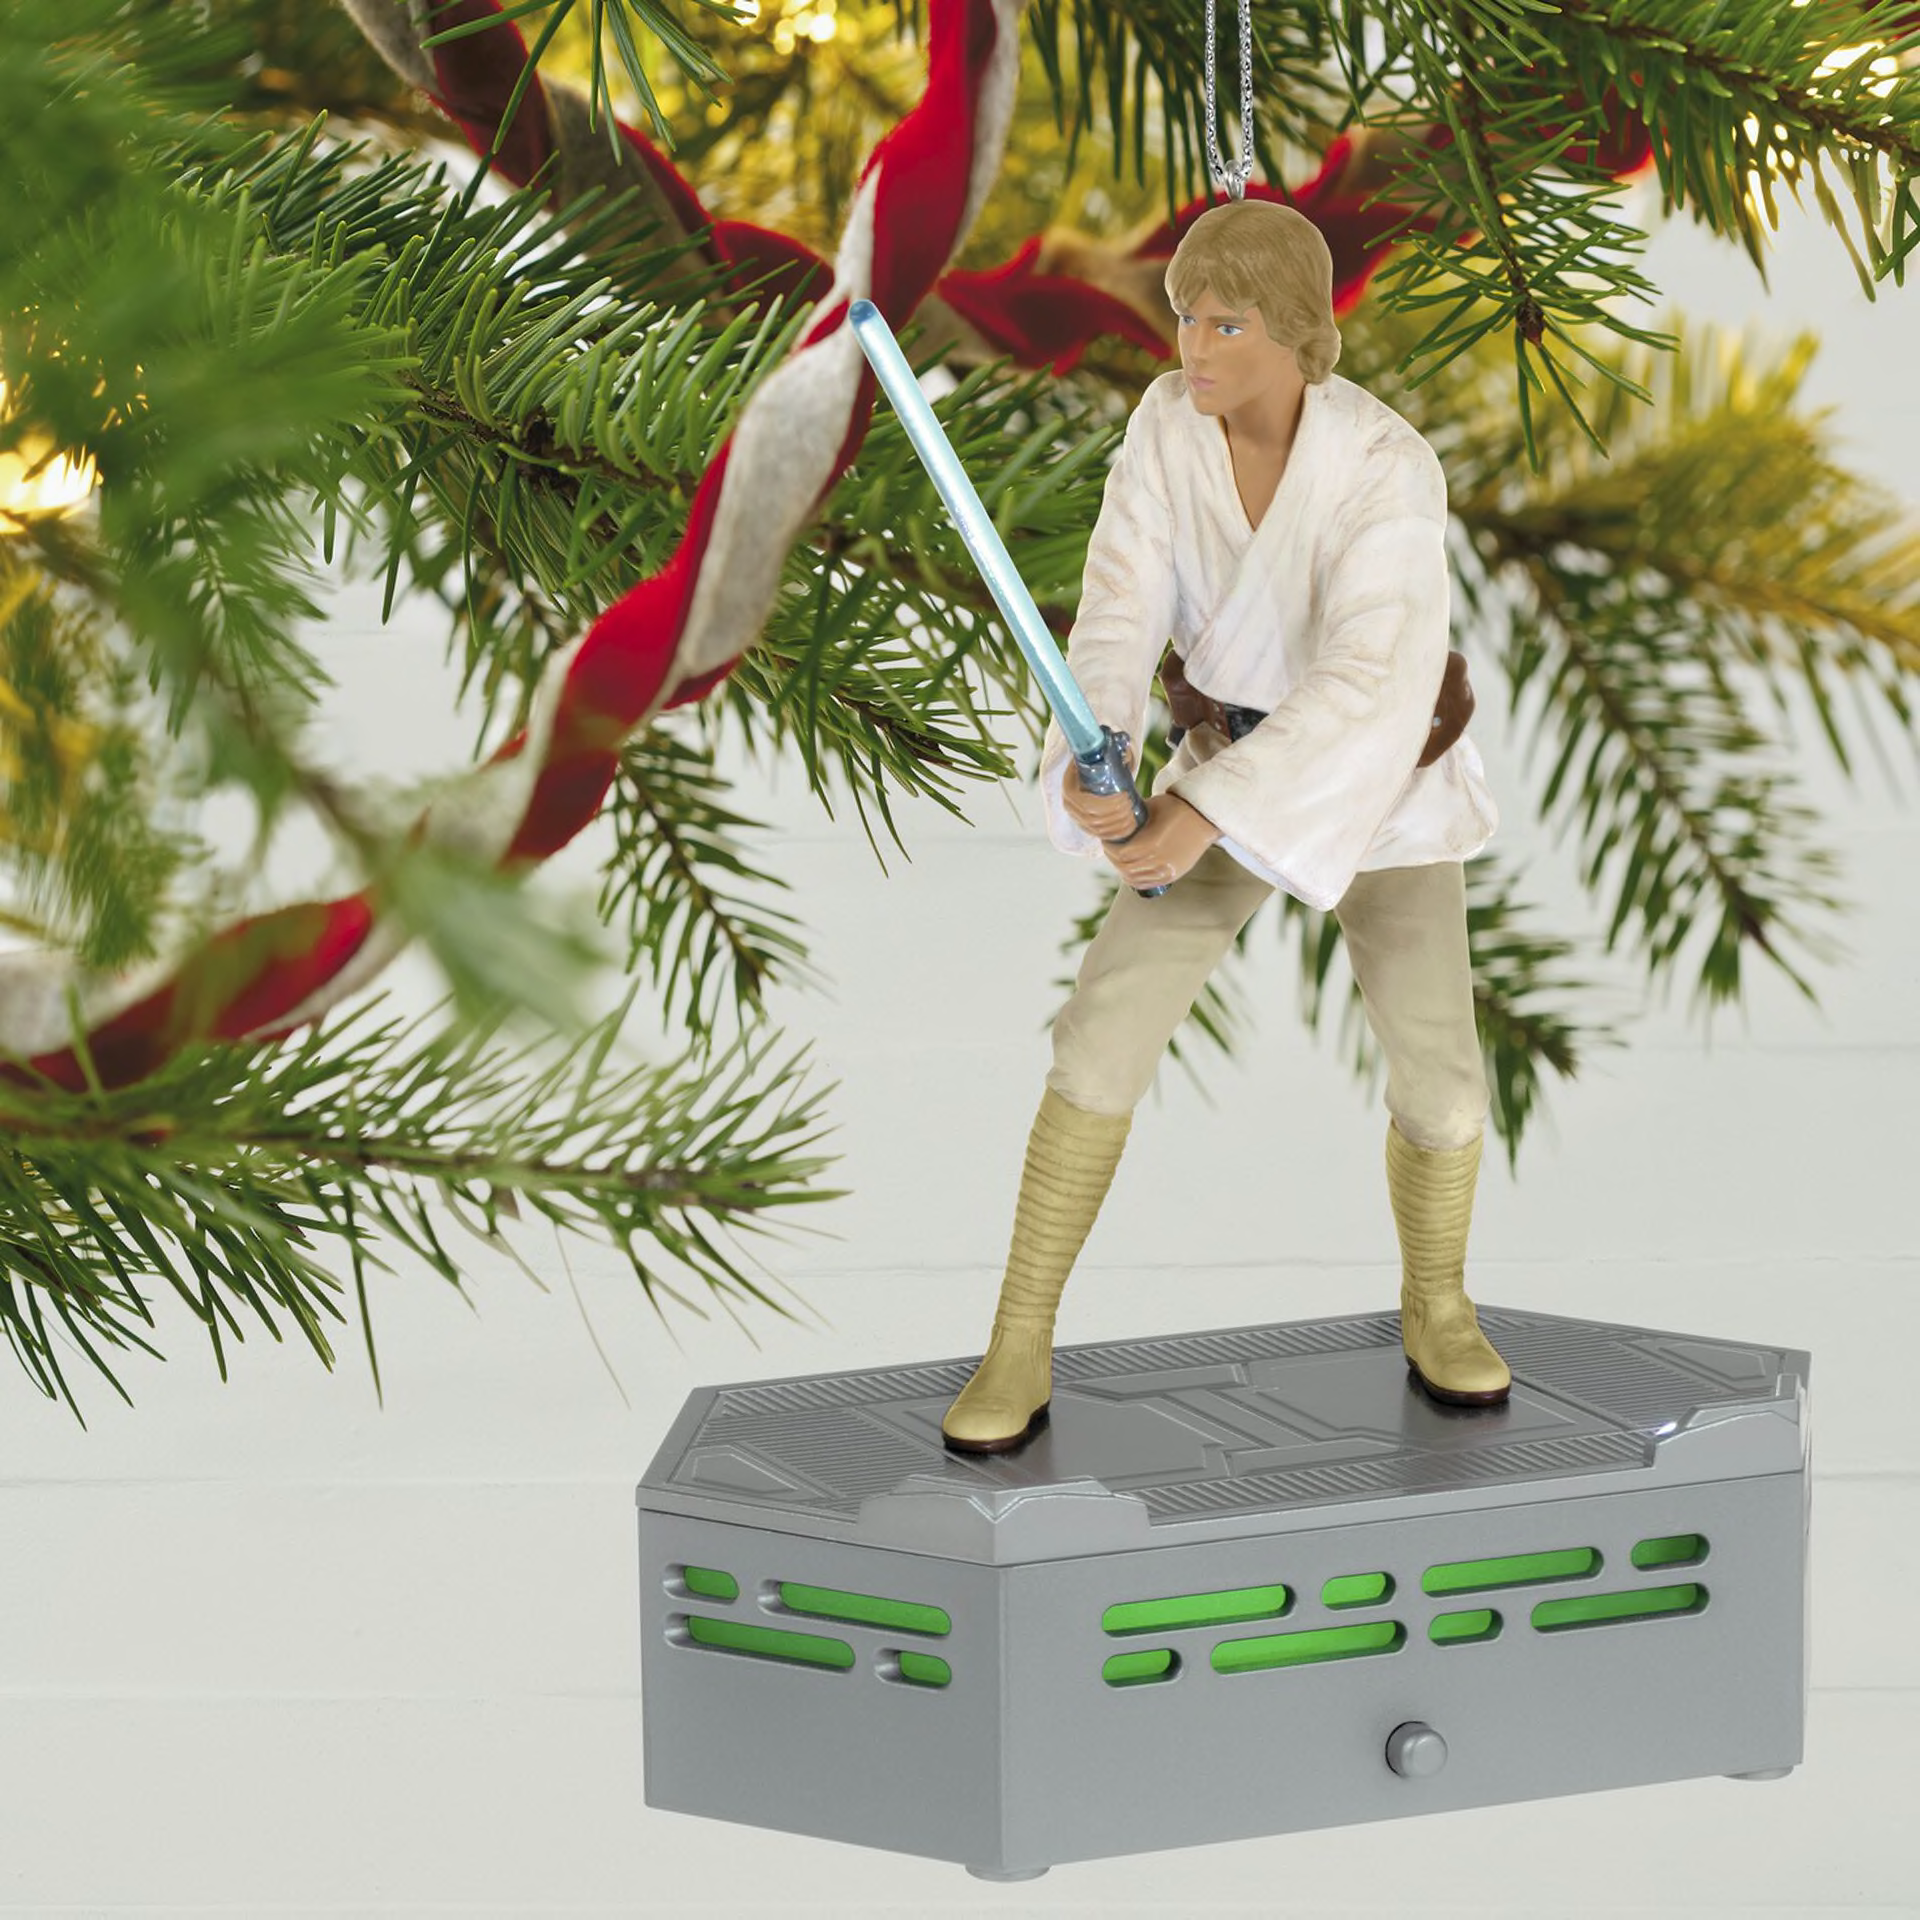 Hallmark unveils Star Wars Keepsake Ornaments ahead of the holidays